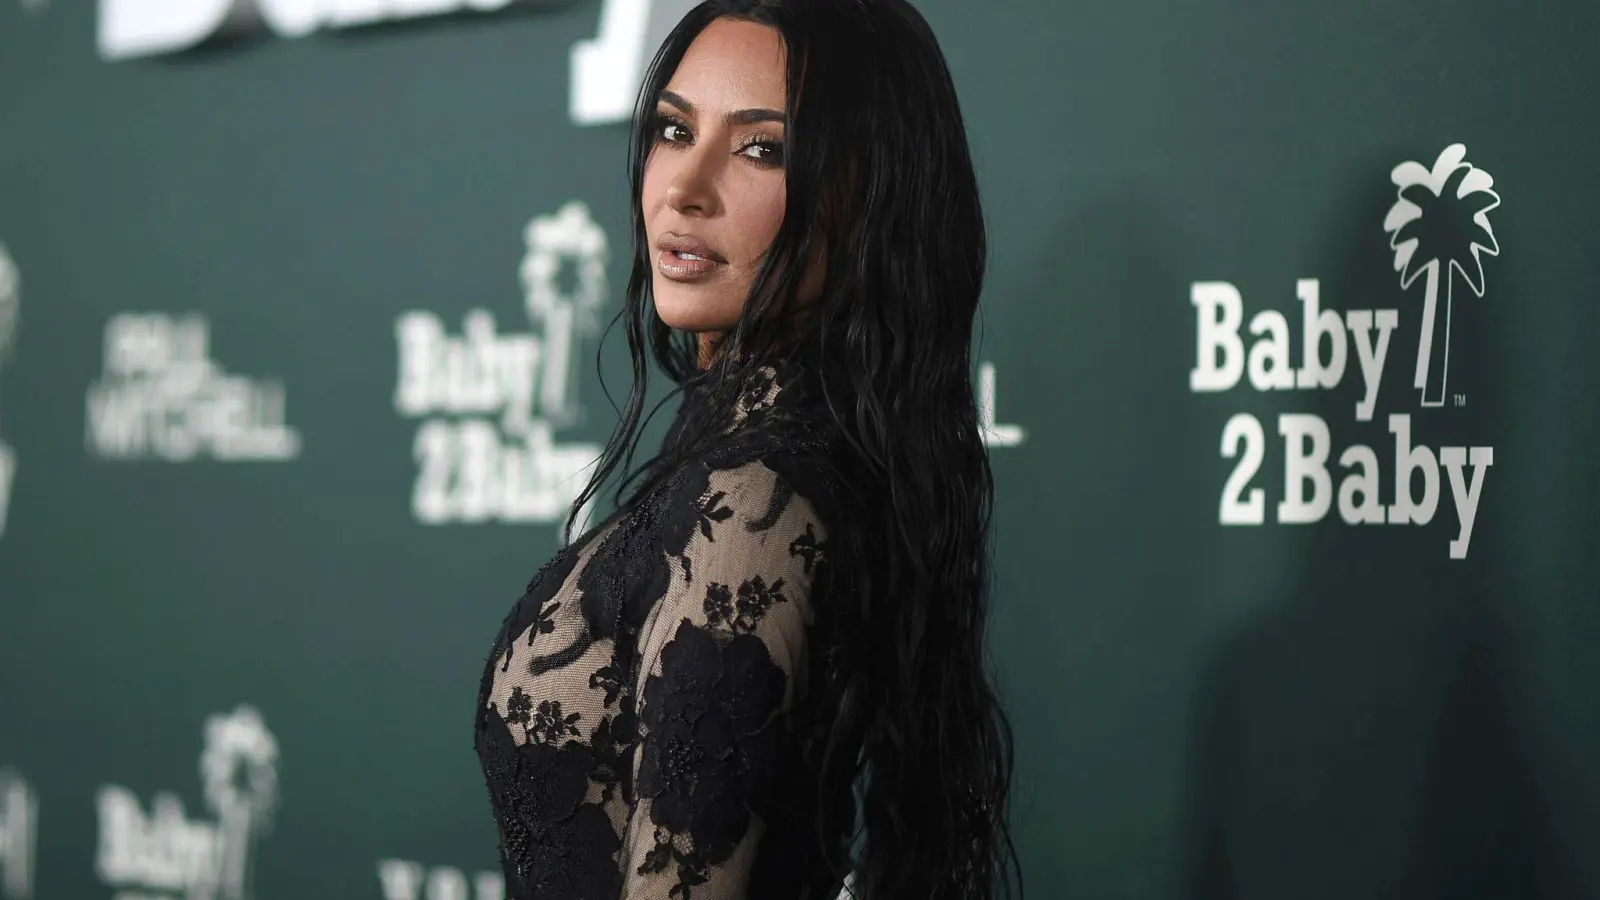 Kim Kardashian möchte ihren Aufschlag verbessern. (Foto: Richard Shotwell/Invision/AP/dpa)